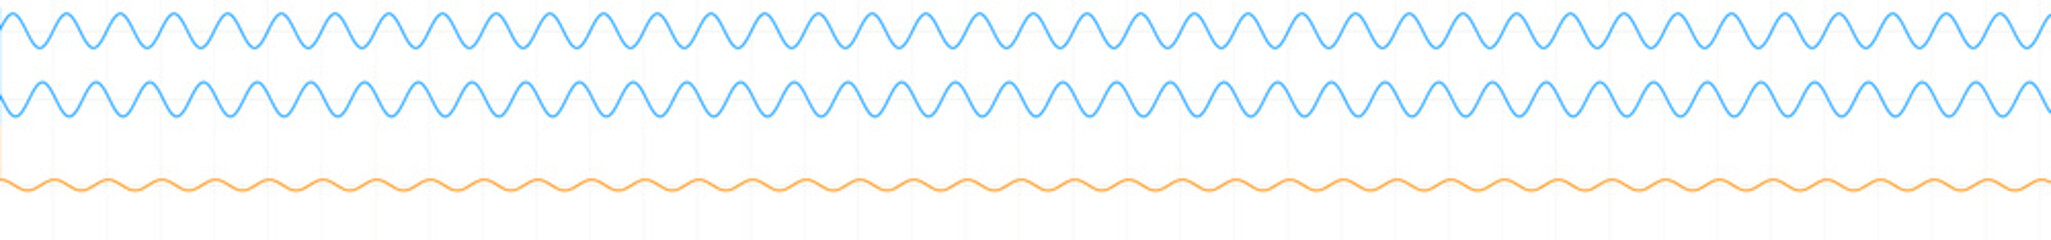 Waveforms illustration, optics, physics and quantum mechanics